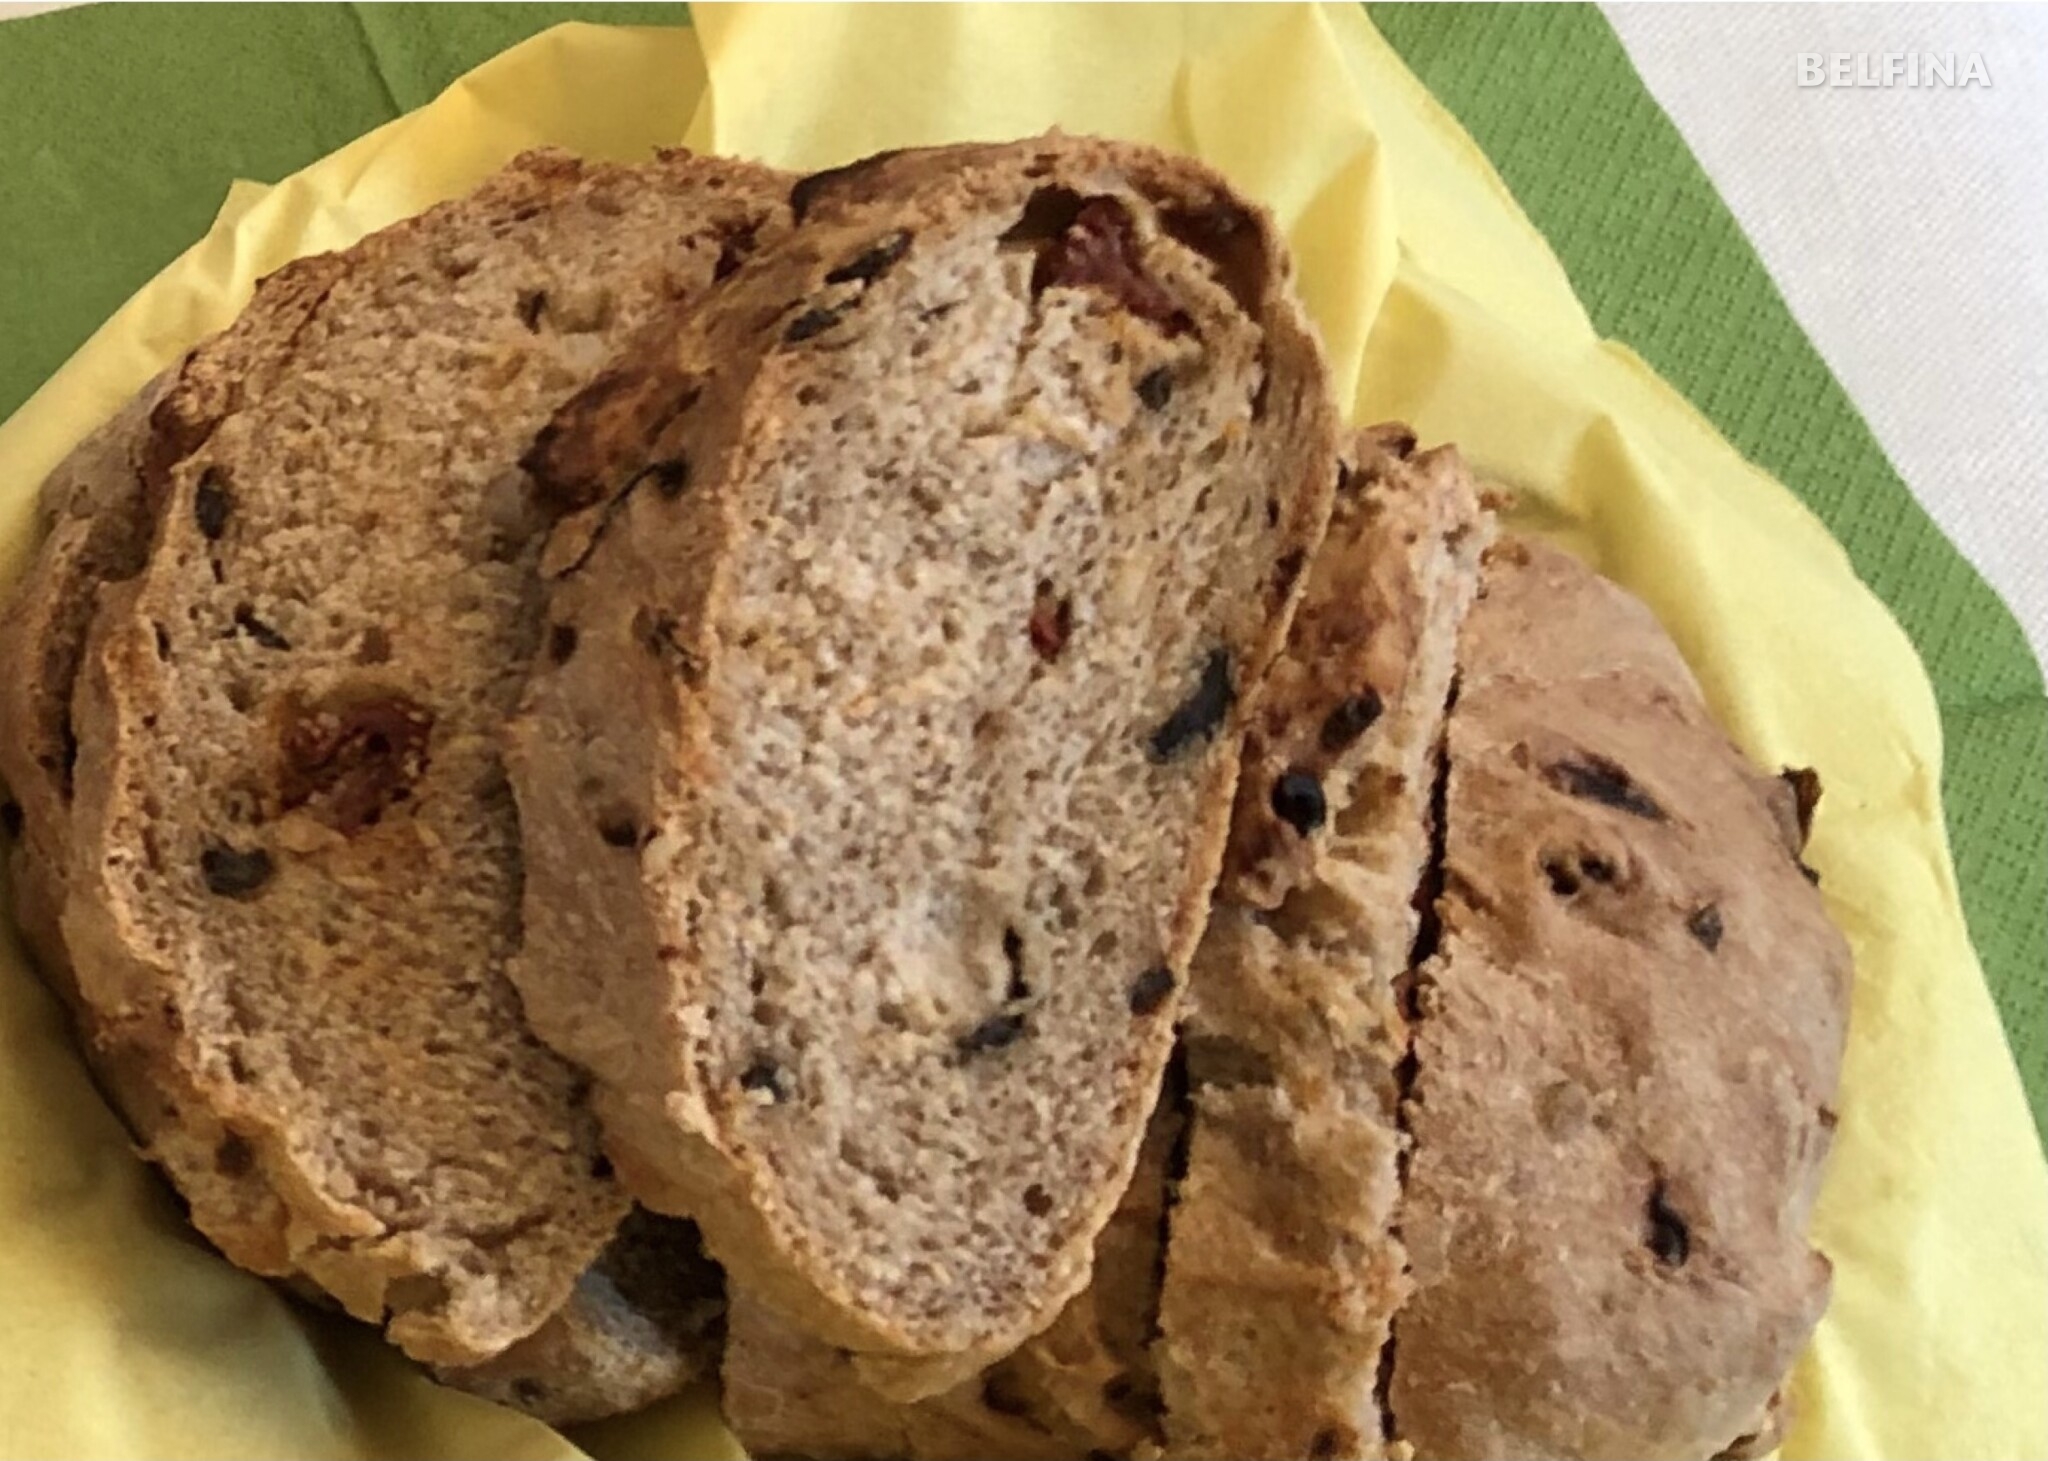 Brot pikant - Tinas Kochblog von BELFINA